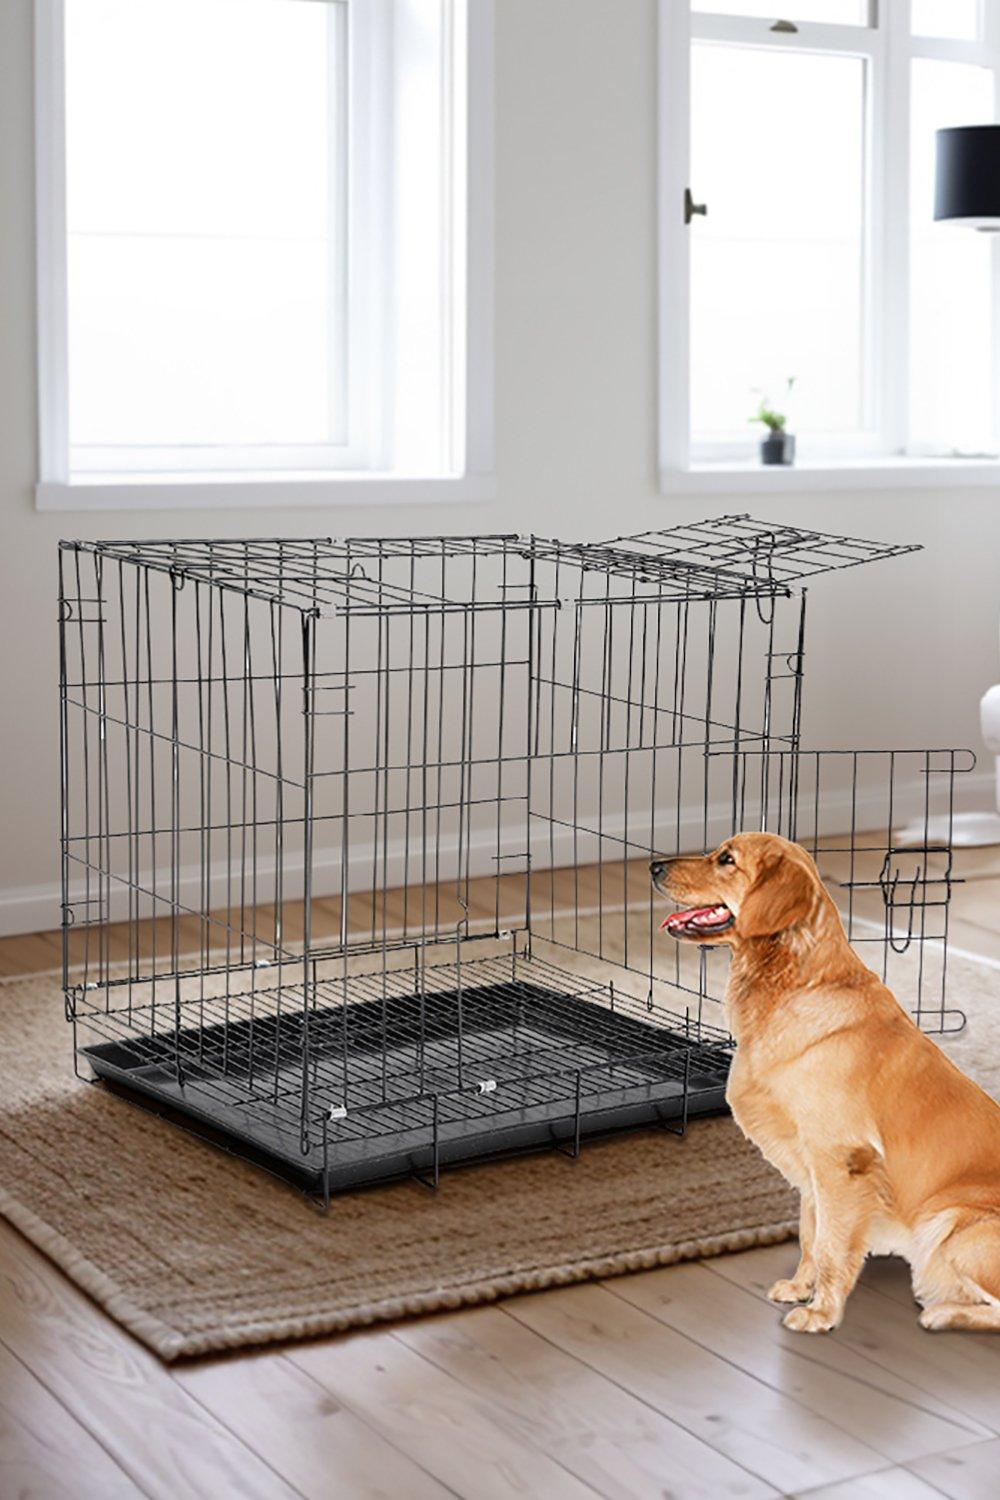 85cm W x 60cm D x 70cm H Wire Dog Crate with 2 Doors and Tray